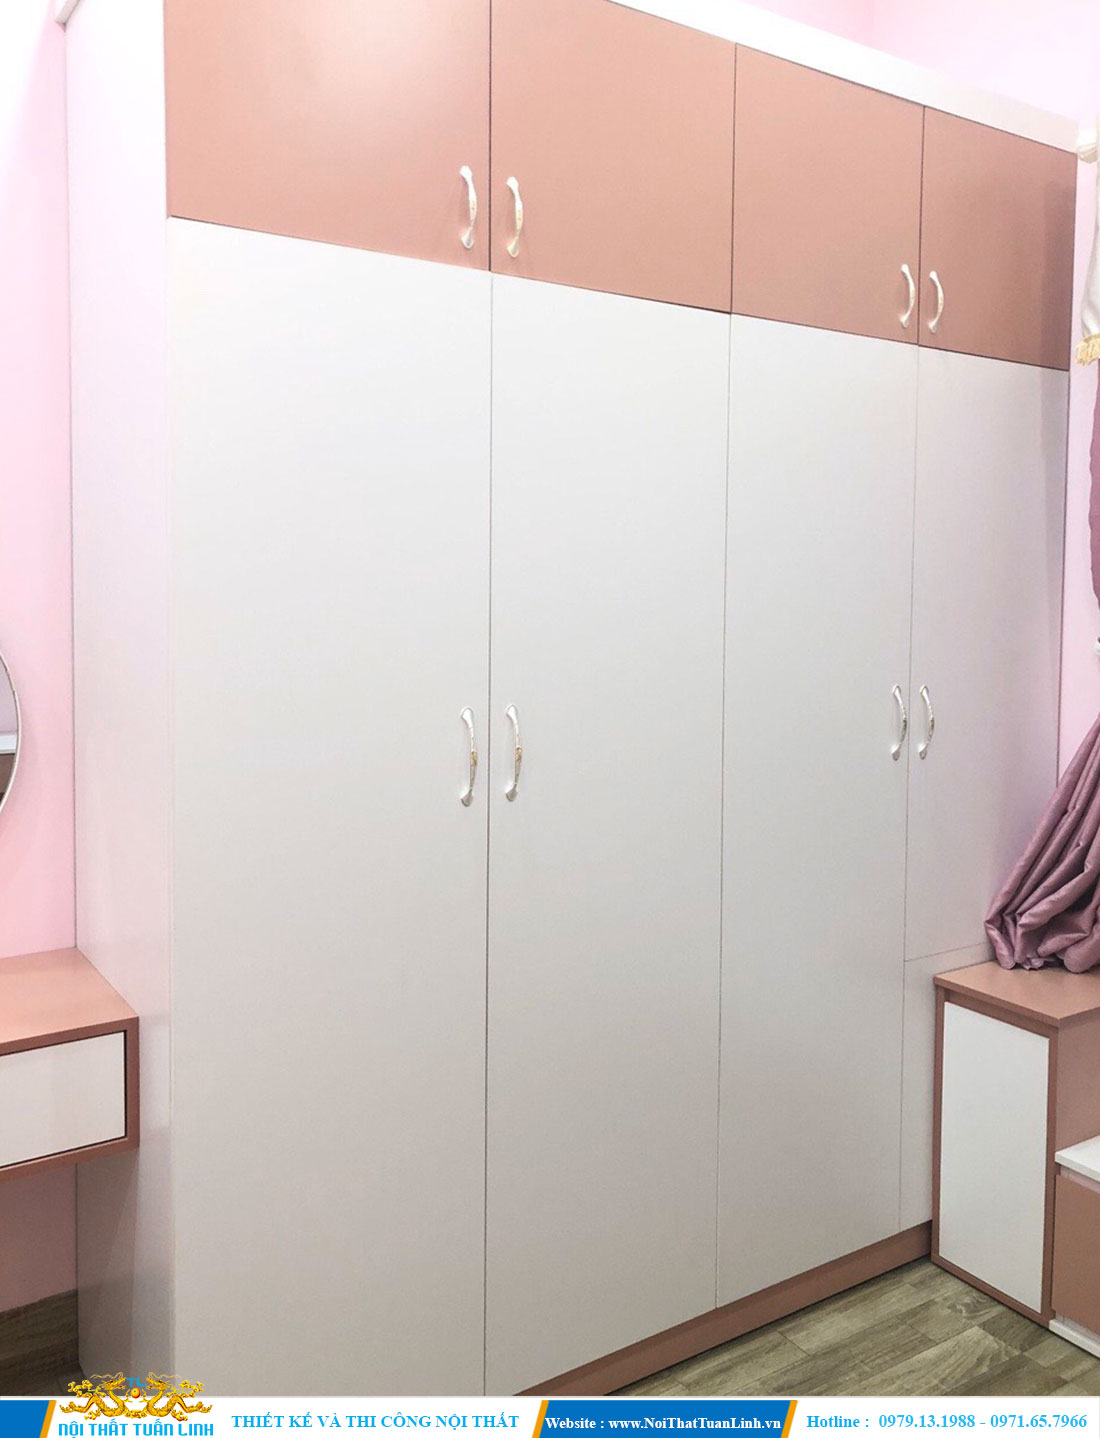 Thiết kế thi công nội thất phòng ngủ với tone màu hồng nhẹ nhàng 7